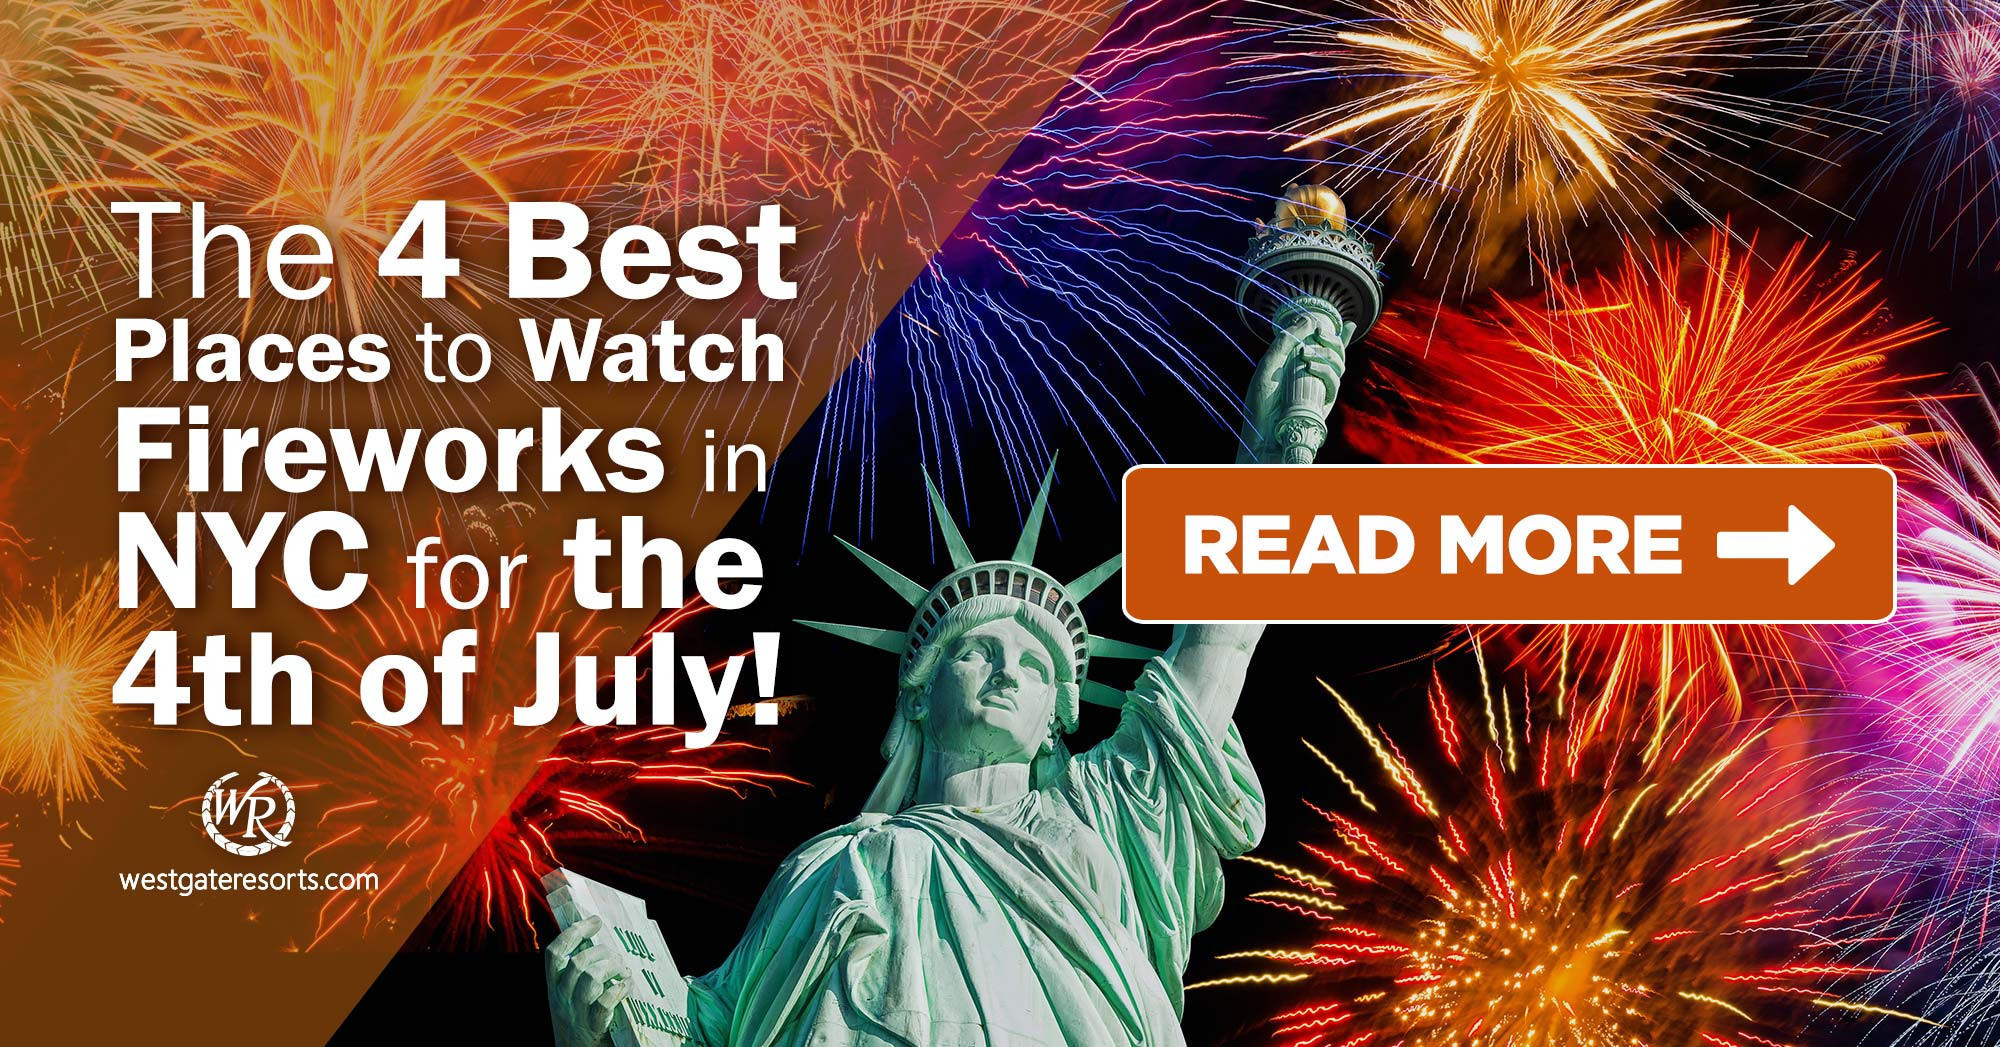 ¡Los 4 mejores lugares para ver fuegos artificiales en Nueva York el 4 de julio! | Horarios de Fireworks NYC